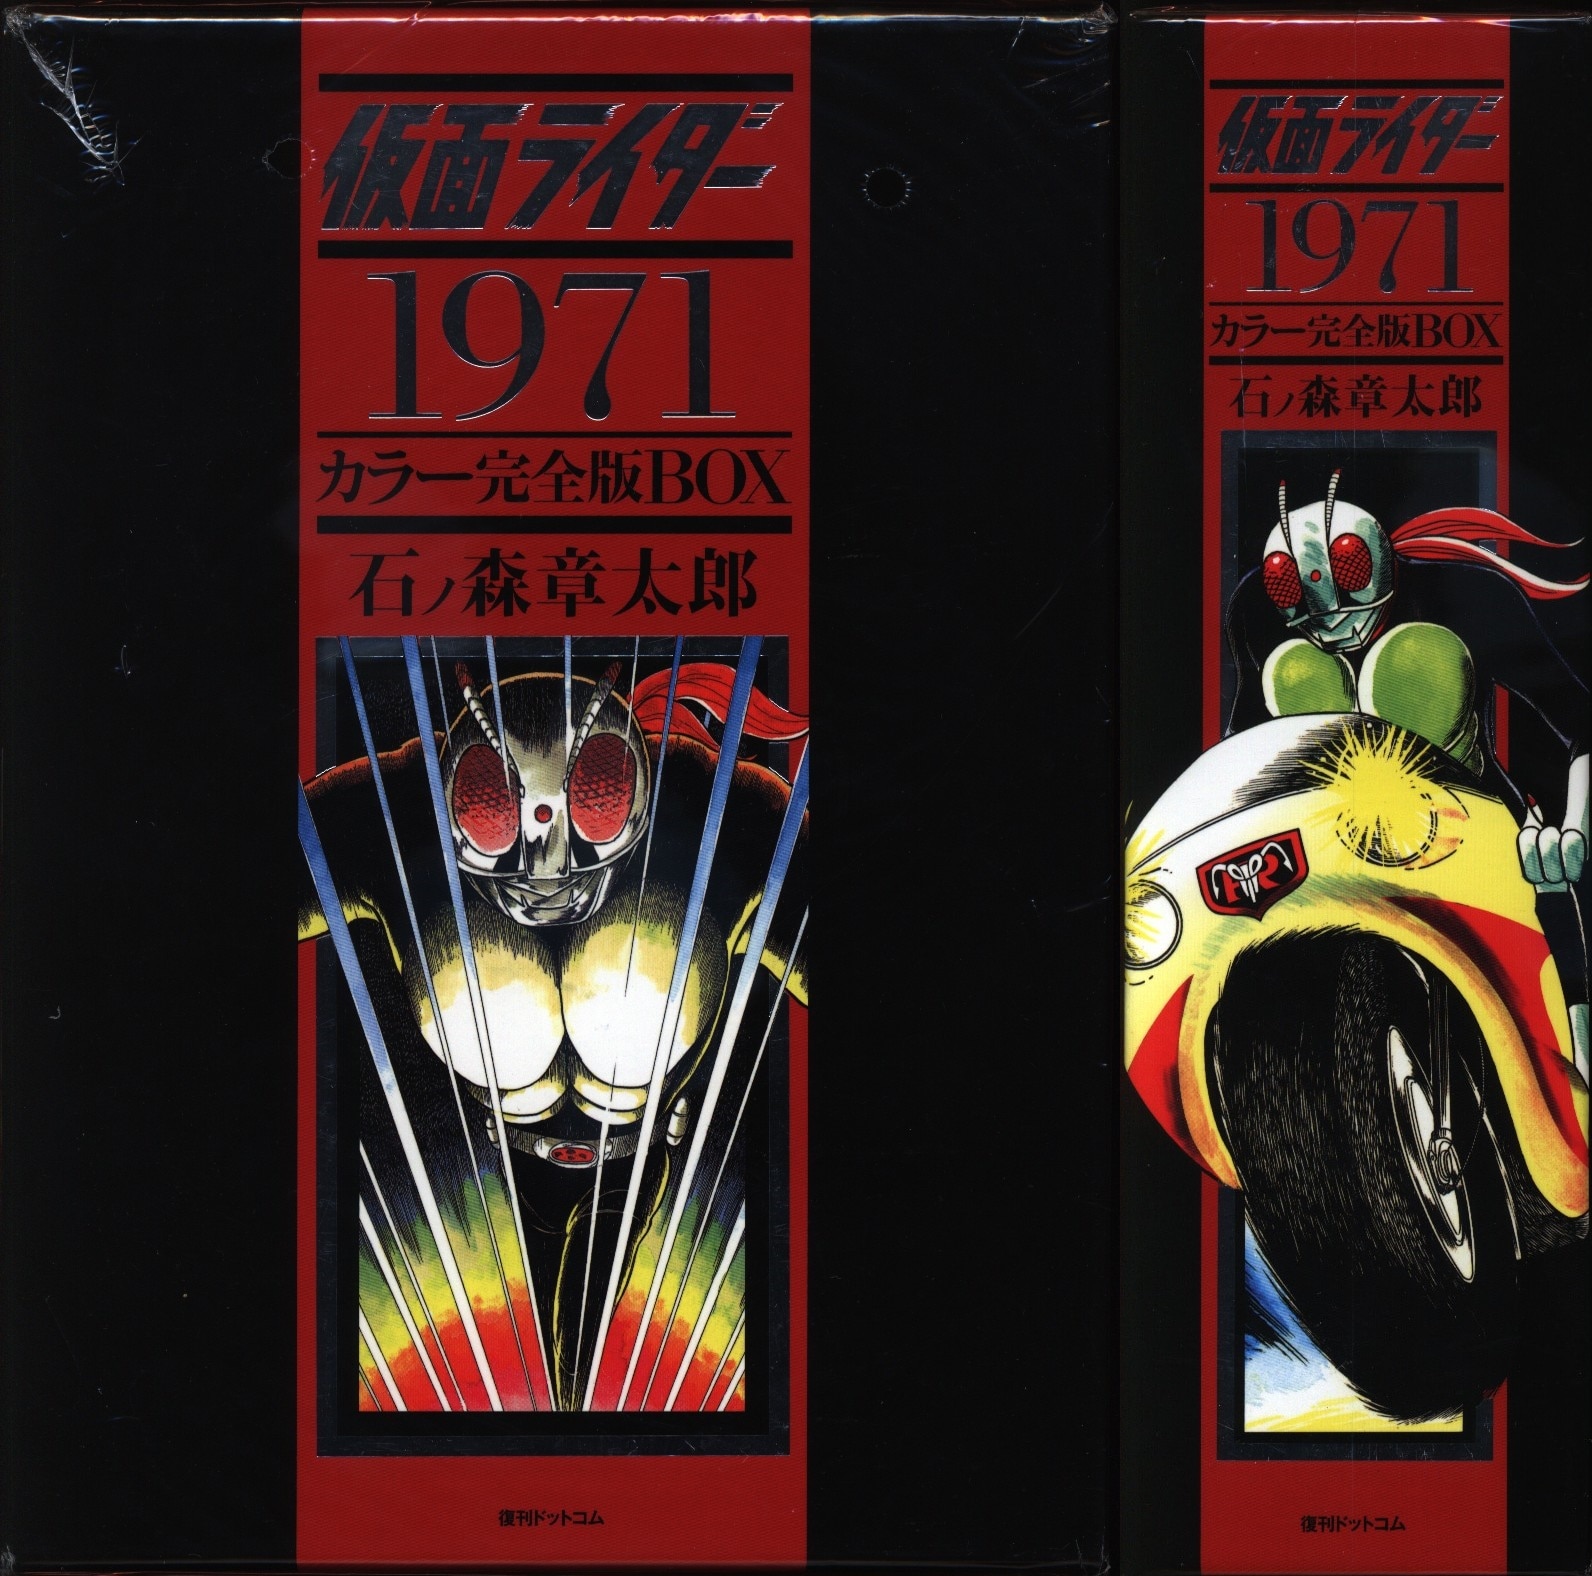 石ノ森章太郎 仮面ライダー1971 カラー完全版box まんだらけ Mandarake